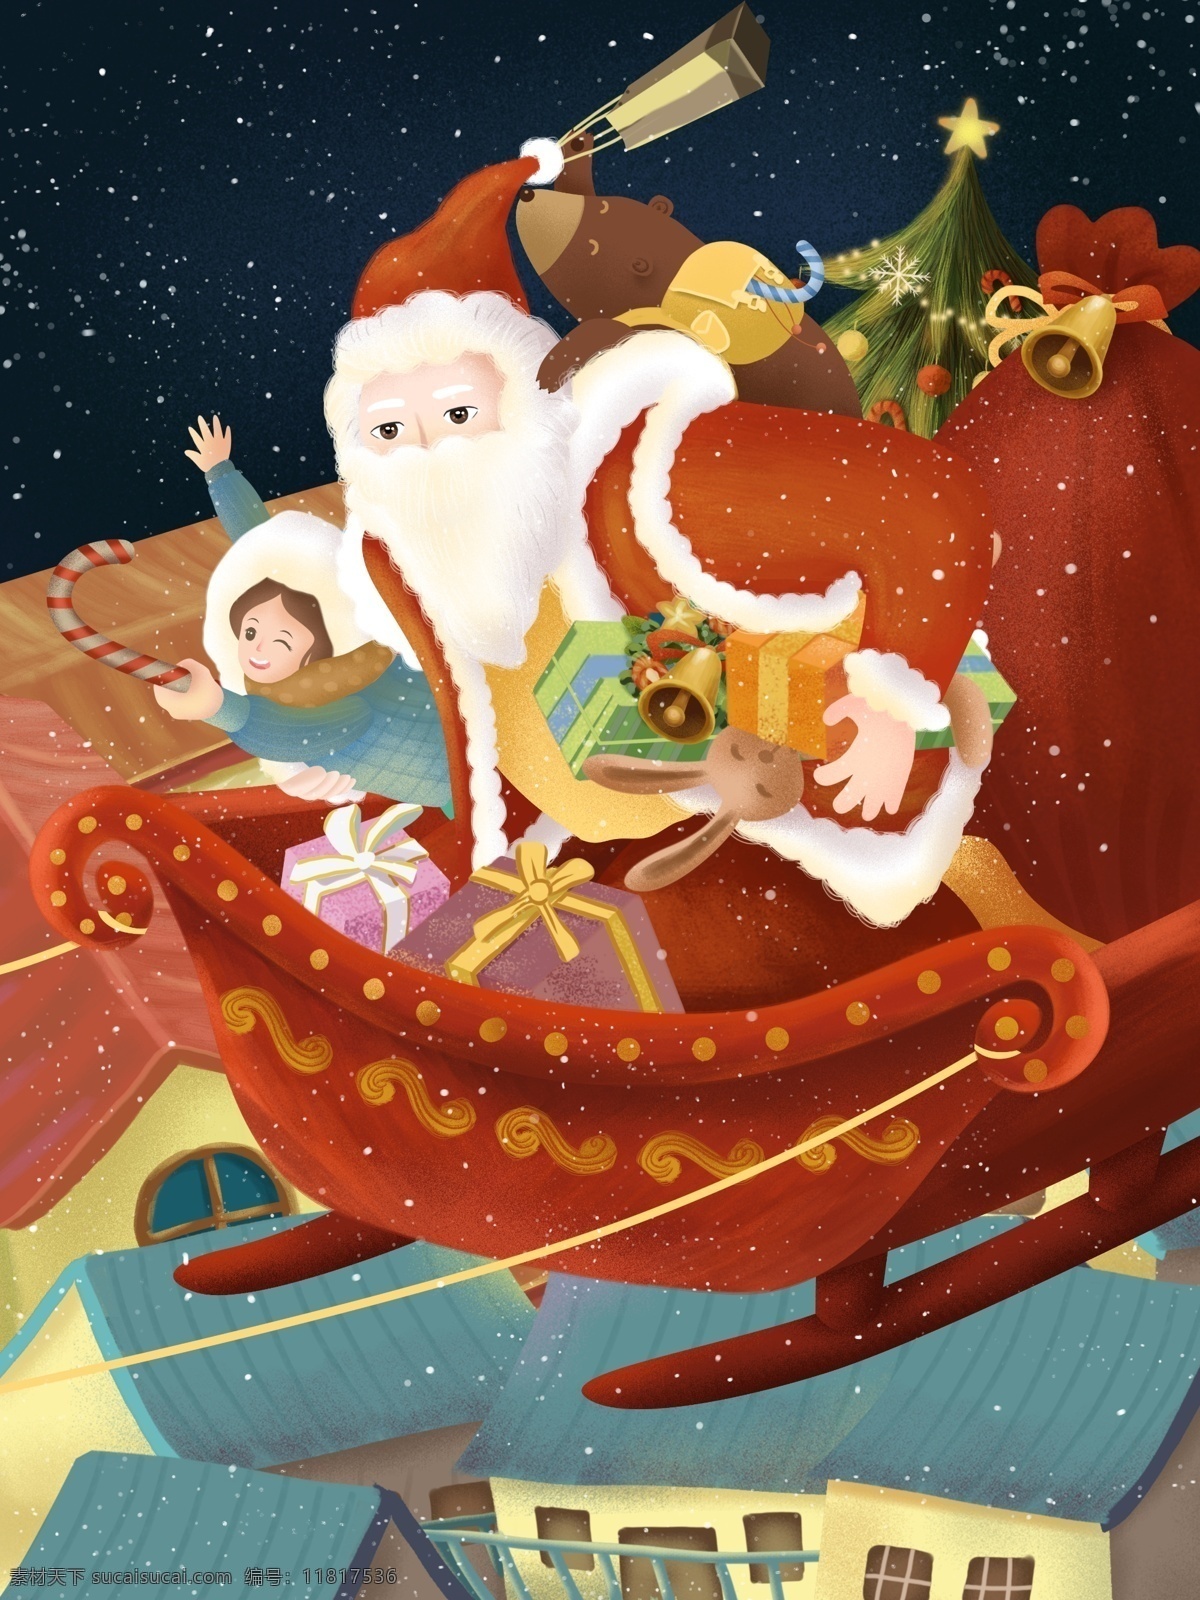 原创 手绘 插画 圣诞节 圣诞老人 送礼 物 礼物 雪橇 手绘插画 圣诞 圣诞车